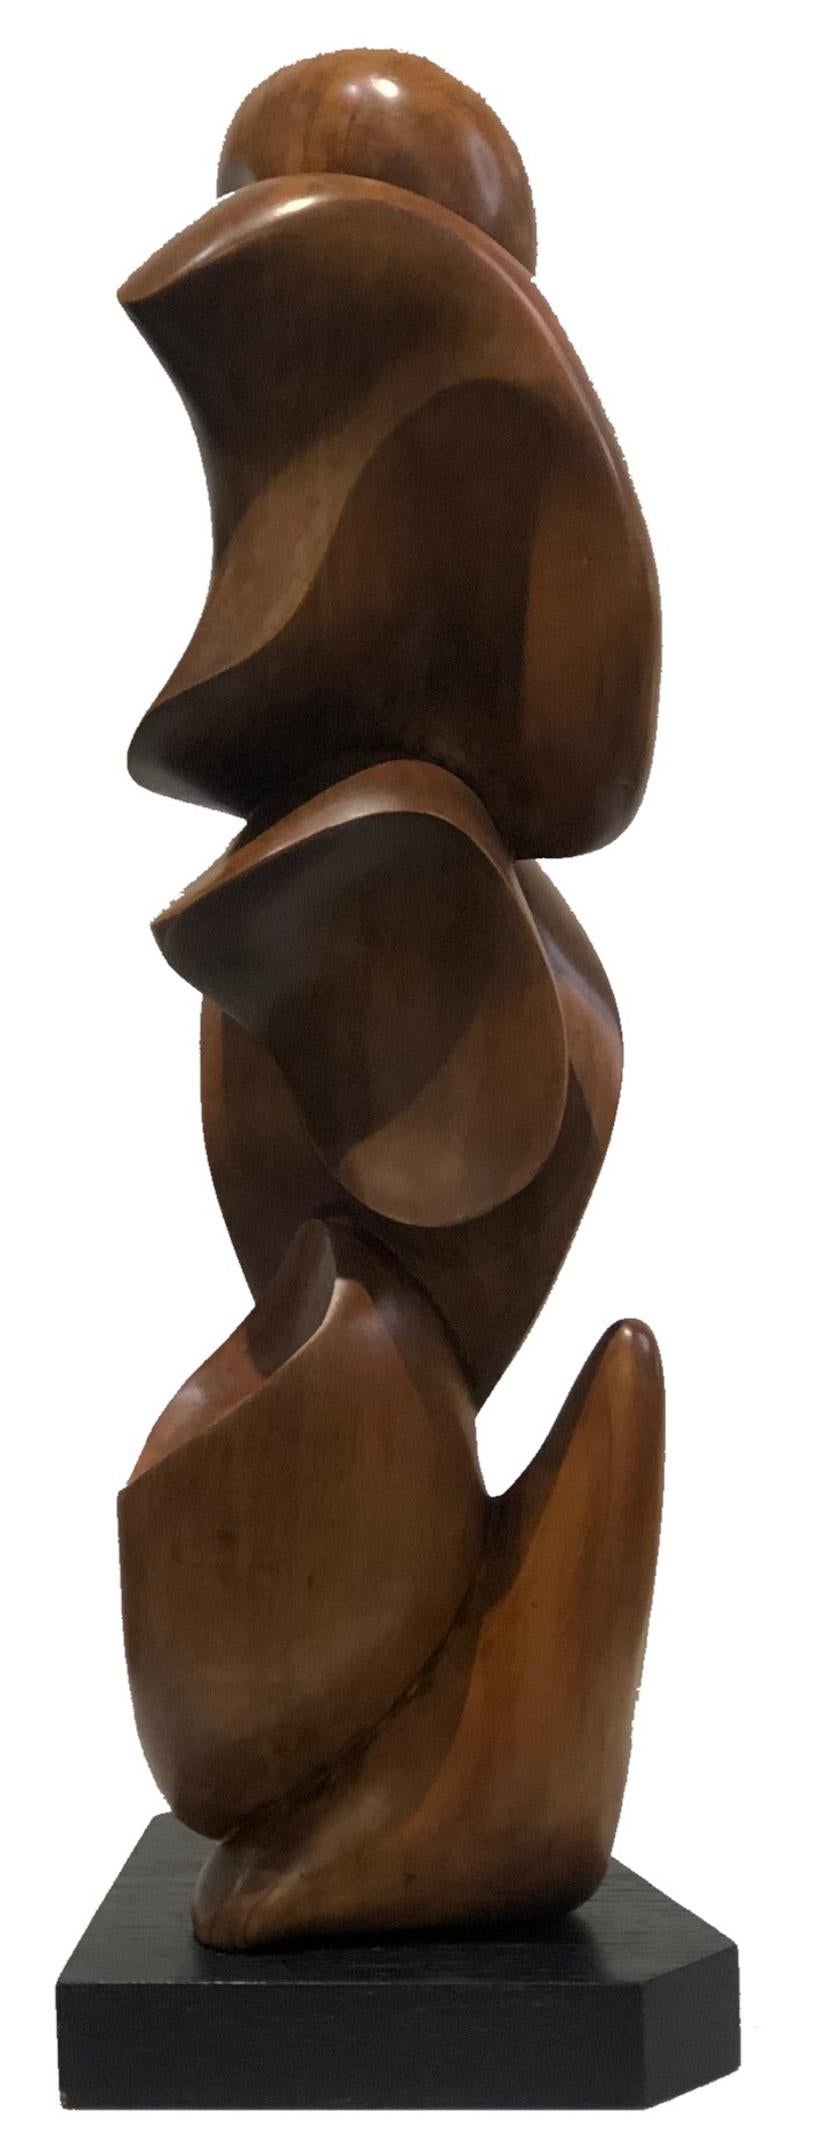 Moderne Mitte des Jahrhunderts
Nach dem Vorbild von Takao Kimura
Geschnitztes Ulmenholz
Abstrakte Skulptur
Japan, ca. 1960er Jahre

ABMESSUNGEN
Höhe: 17,75 Zoll            Breite: 6,25 Zoll            Tiefe: 6 Zoll

ÜBER
Eine sehr stilvolle und